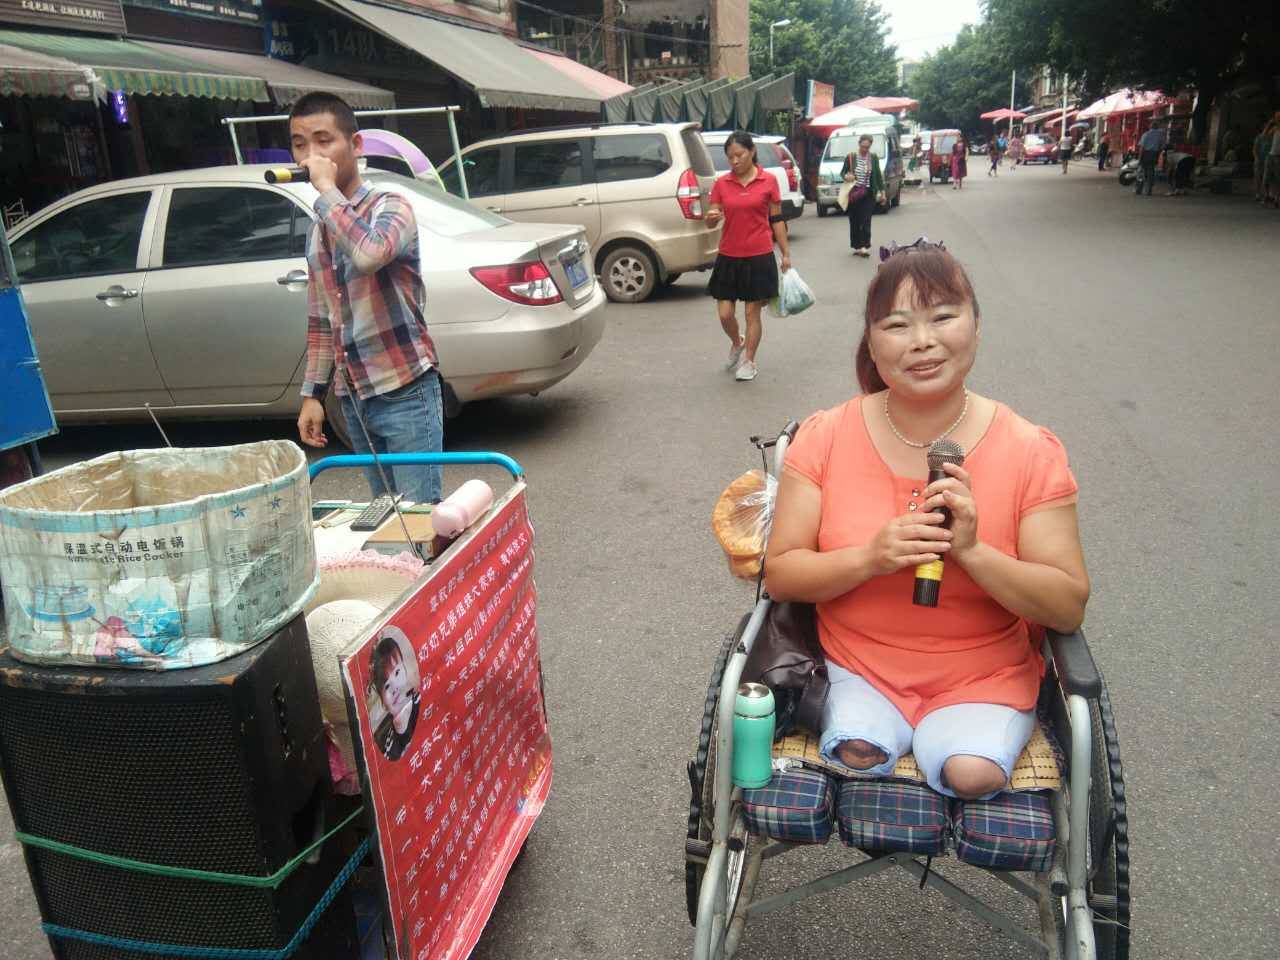 有人觉得残疾人唱歌乞讨扰民,你咋看?_搜狐社